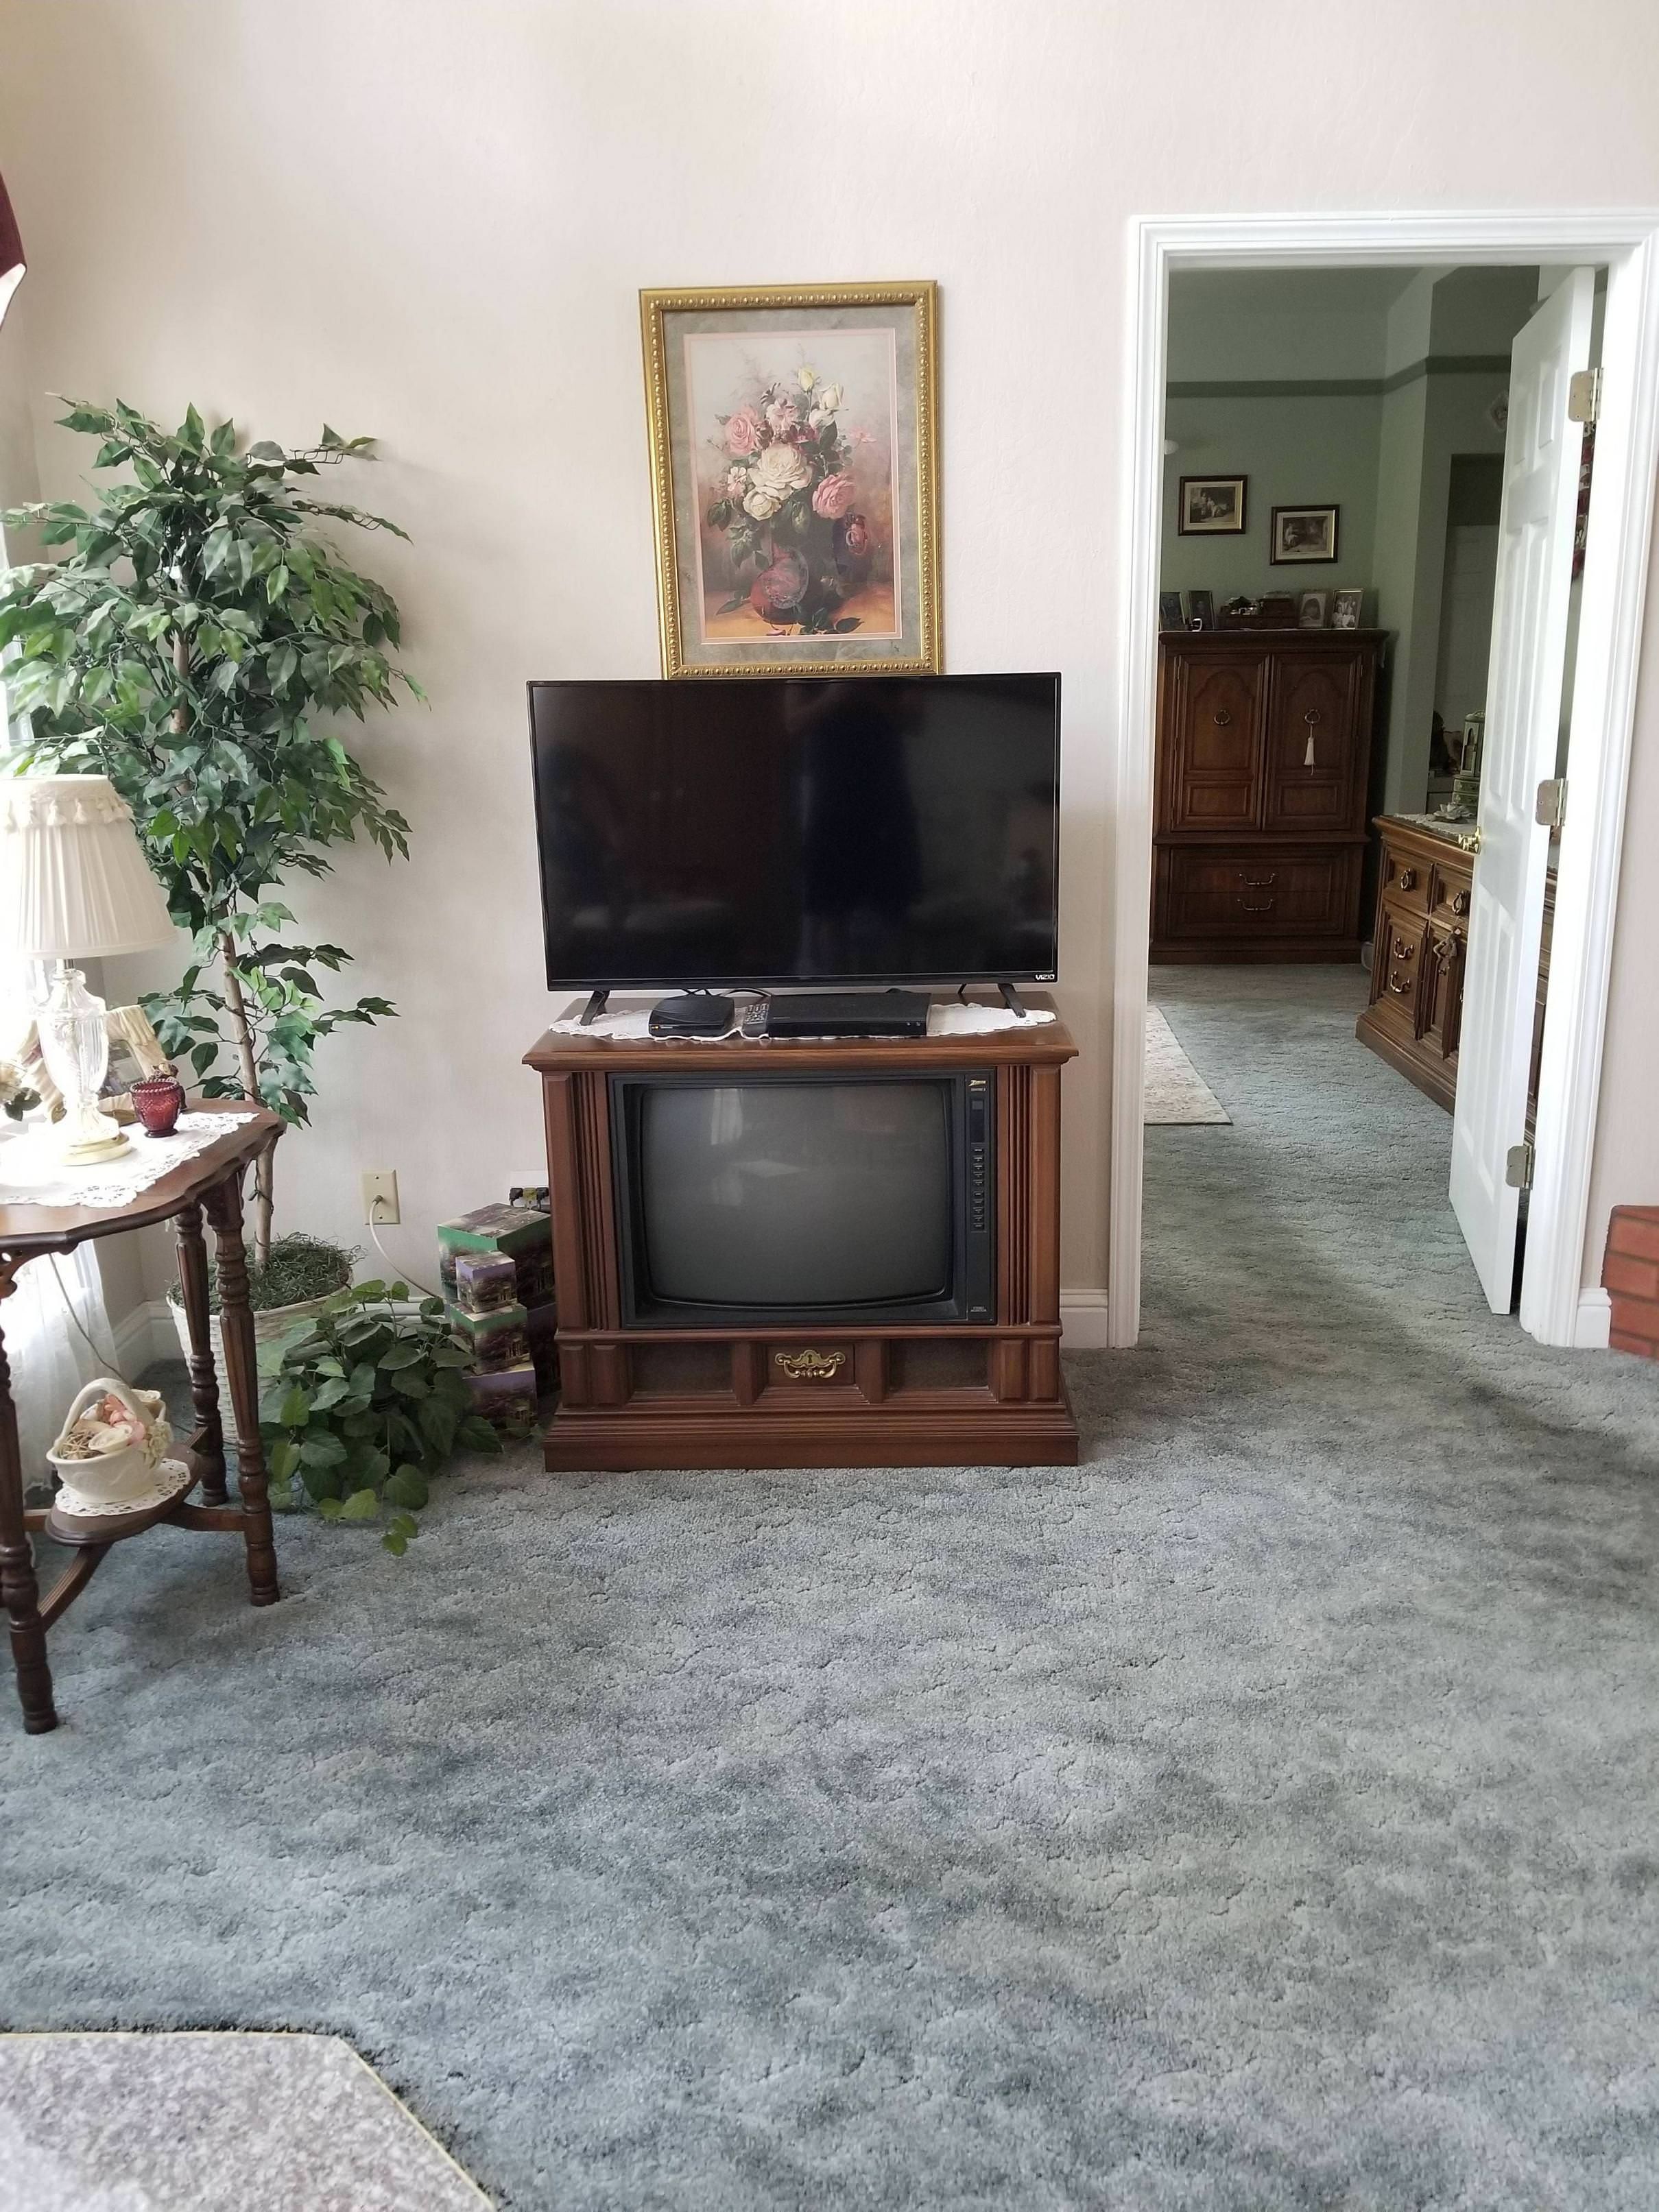 My grandma upgraded her tv